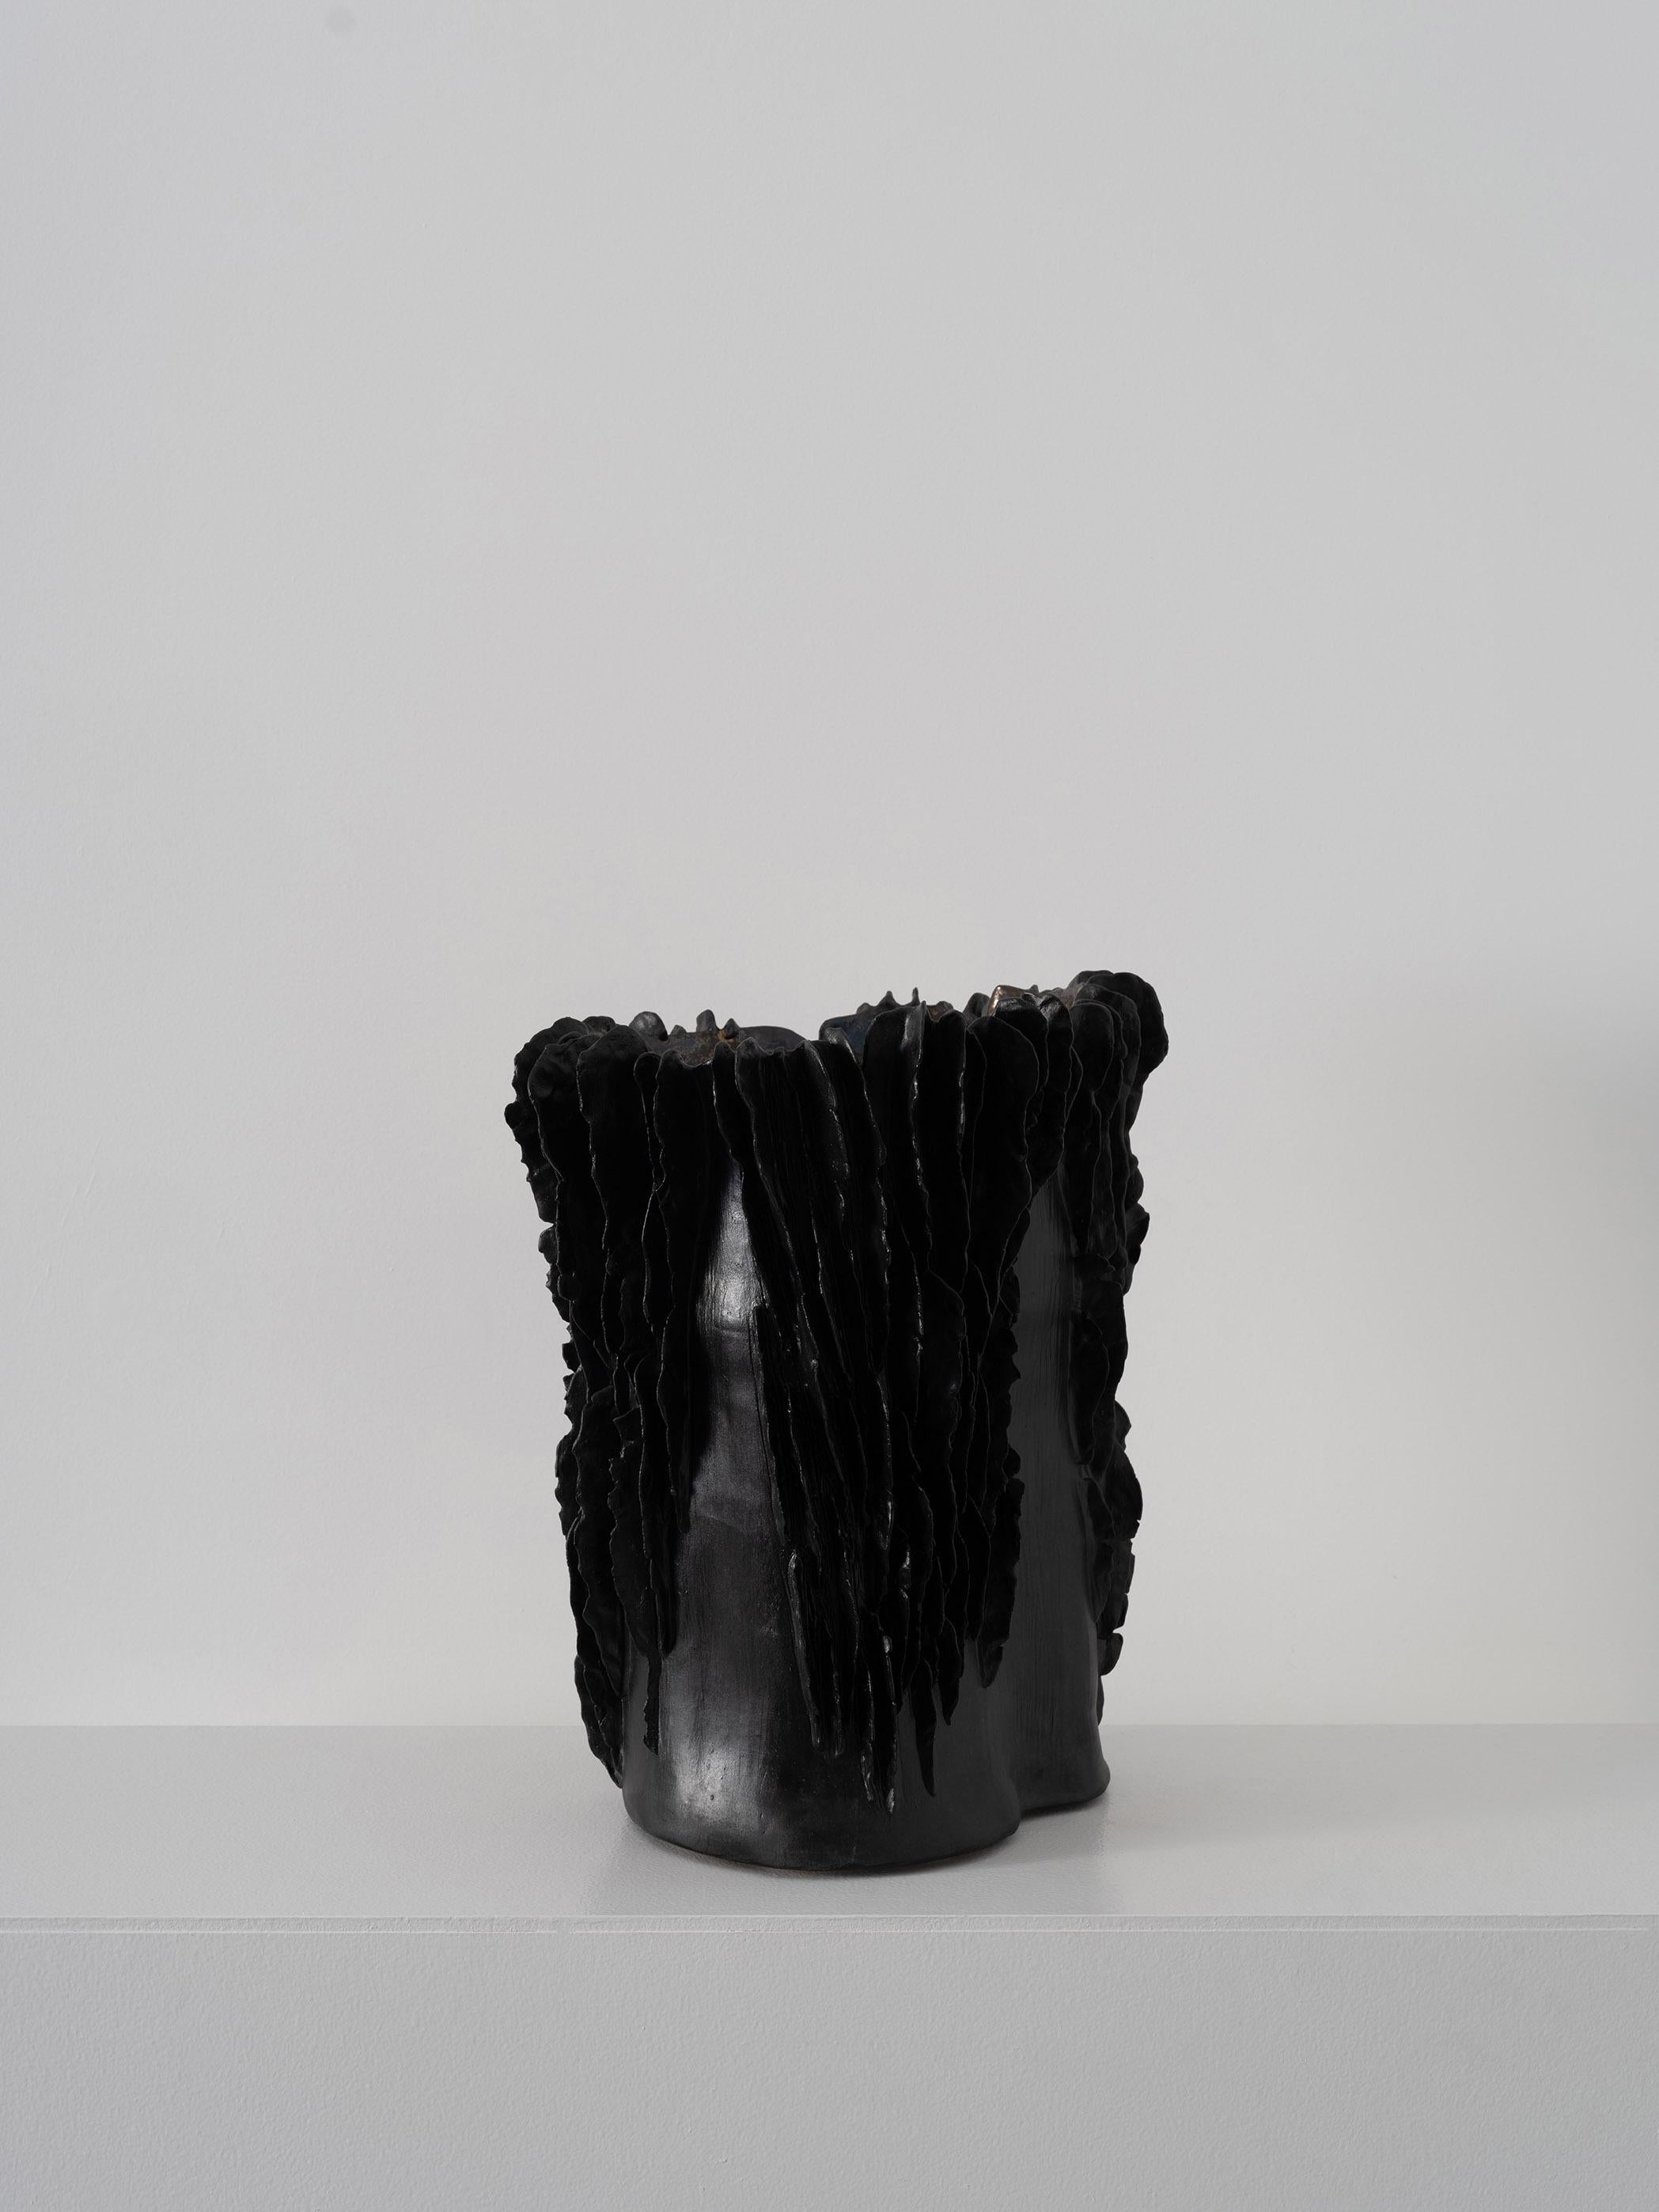 Trish DeMasi
Récipient à lamelles, 2022
Céramique émaillée métallique et noire
11 x 13 x 15 in.